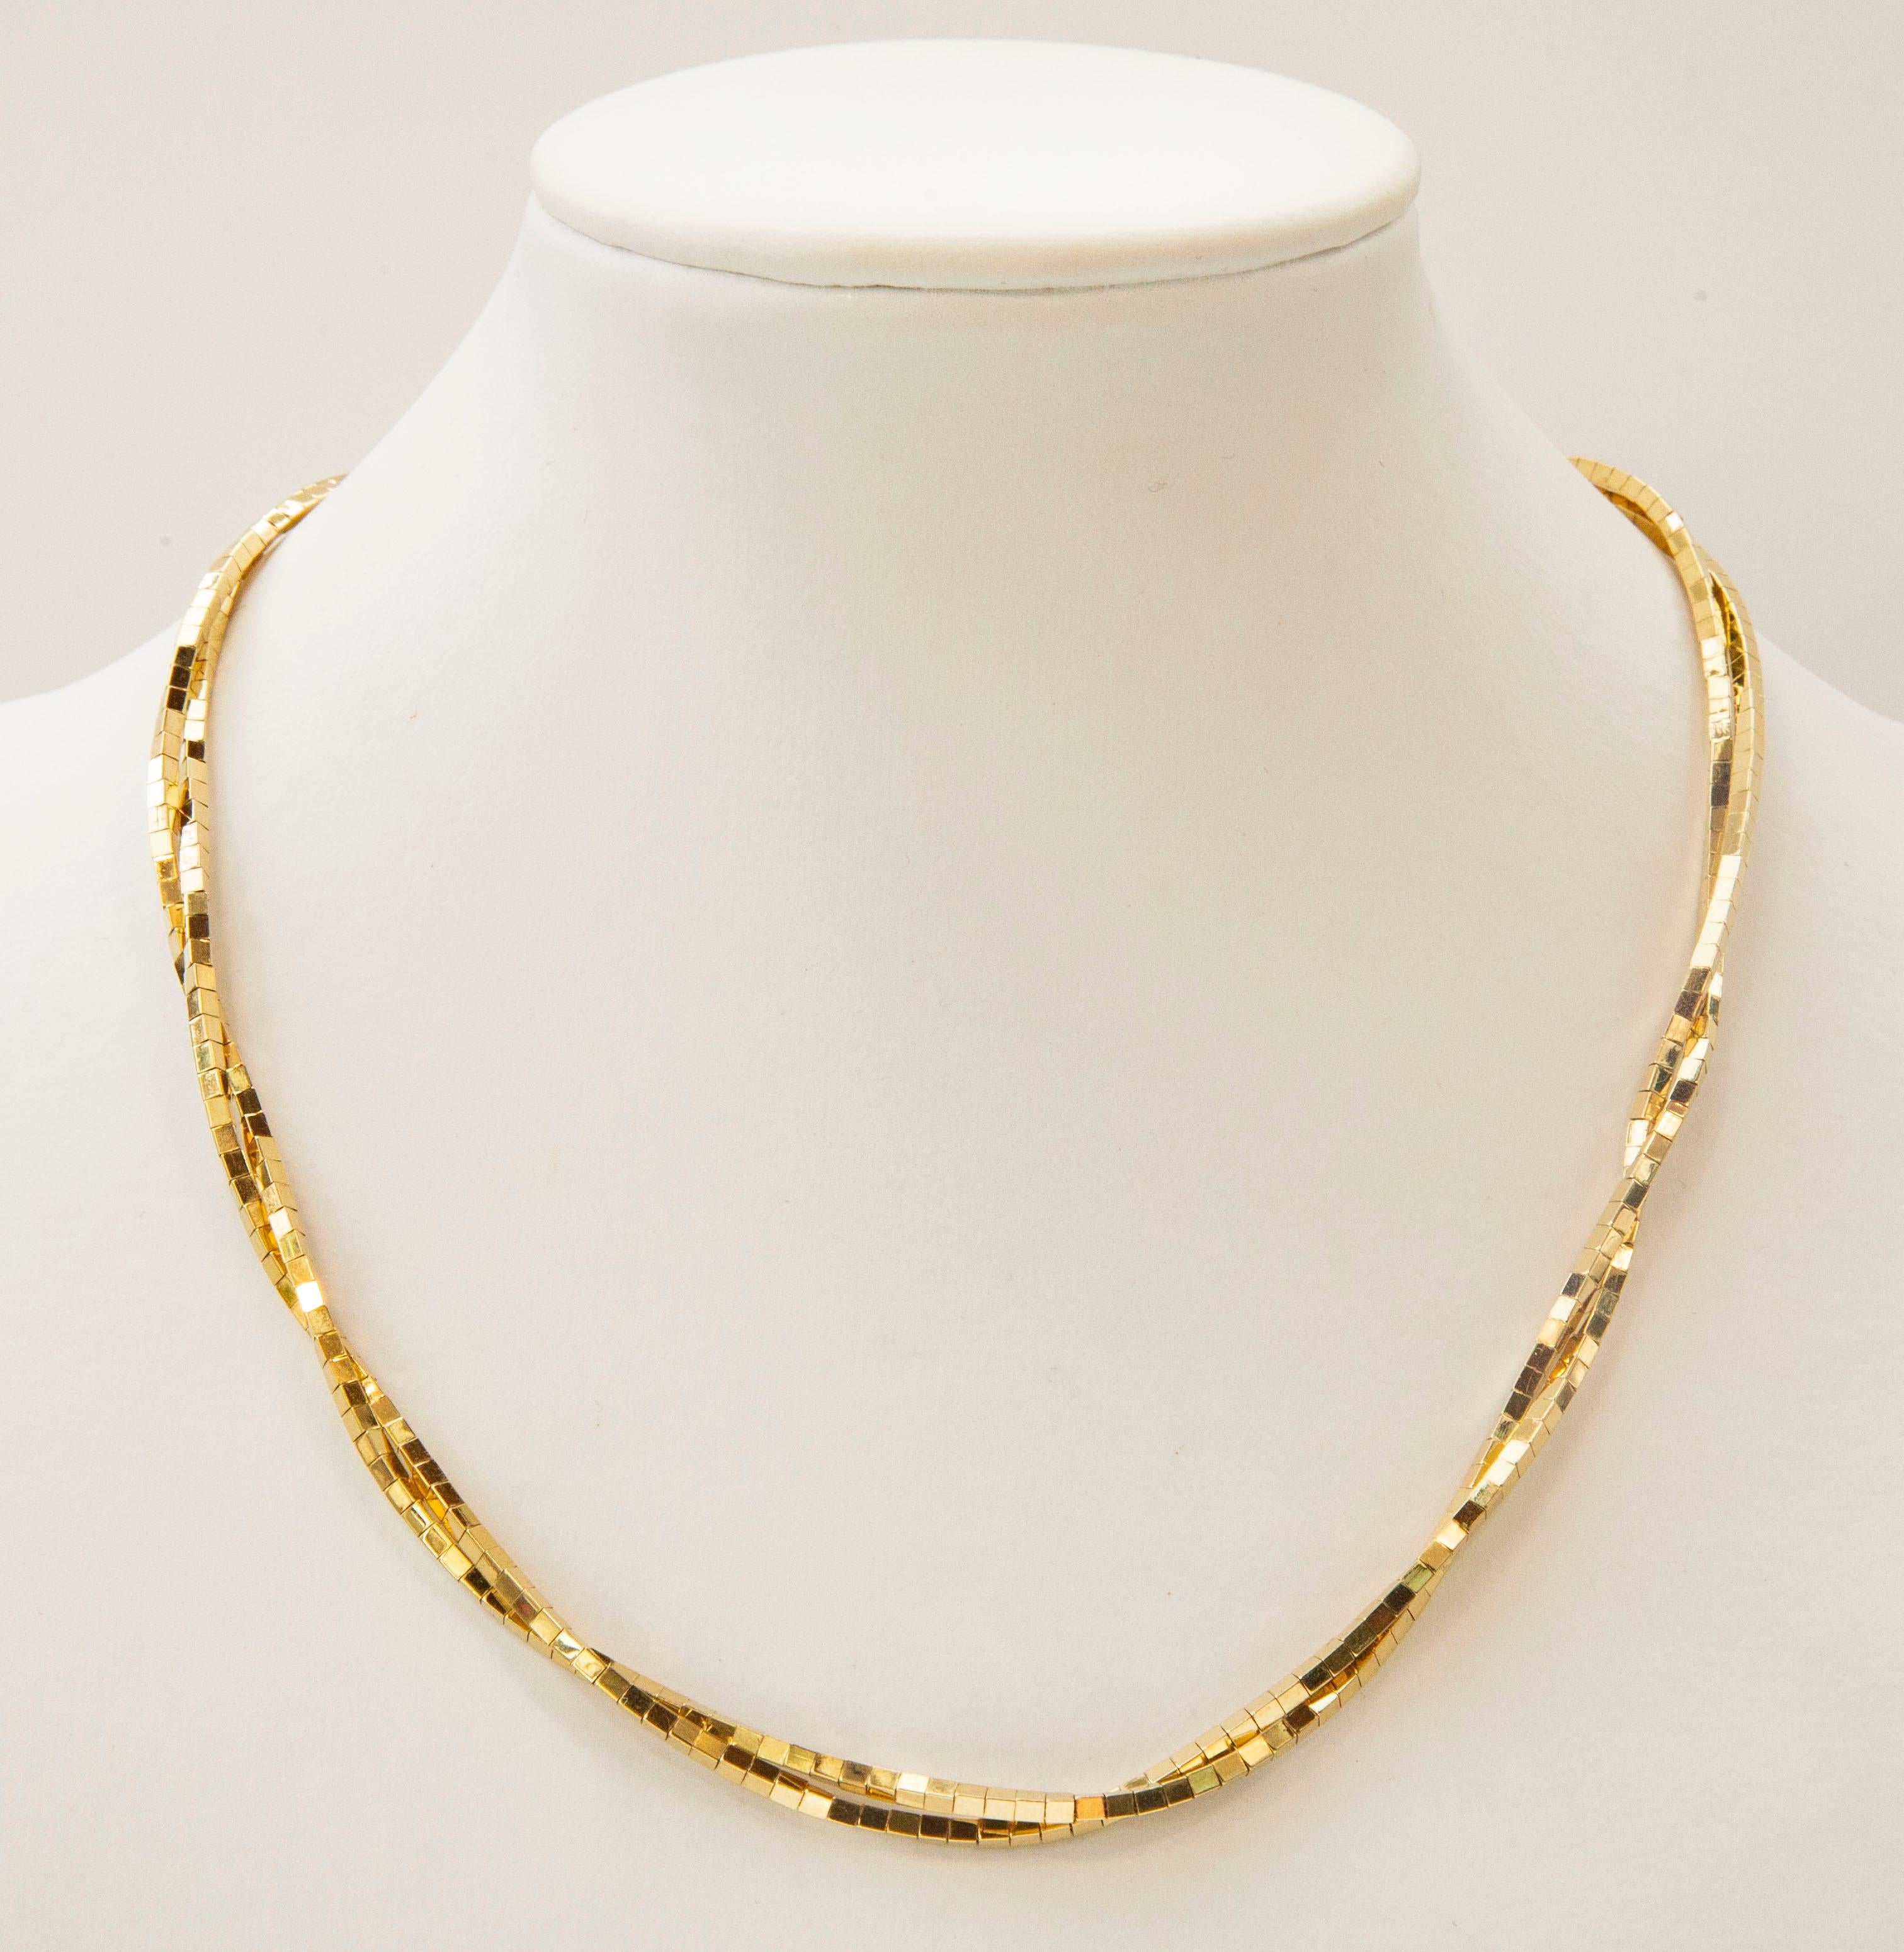 Eine Vintage-Halskette aus massivem 14-karätigem Gelbgold. Die Halskette besteht aus goldenen Stäben in zwei gedrehten Reihen. Das Gold ist glänzend und hat eine mäßige Goldfarbe (d. h. nicht sehr lebhaft und dunkelgolden).  Der Stil der Halskette